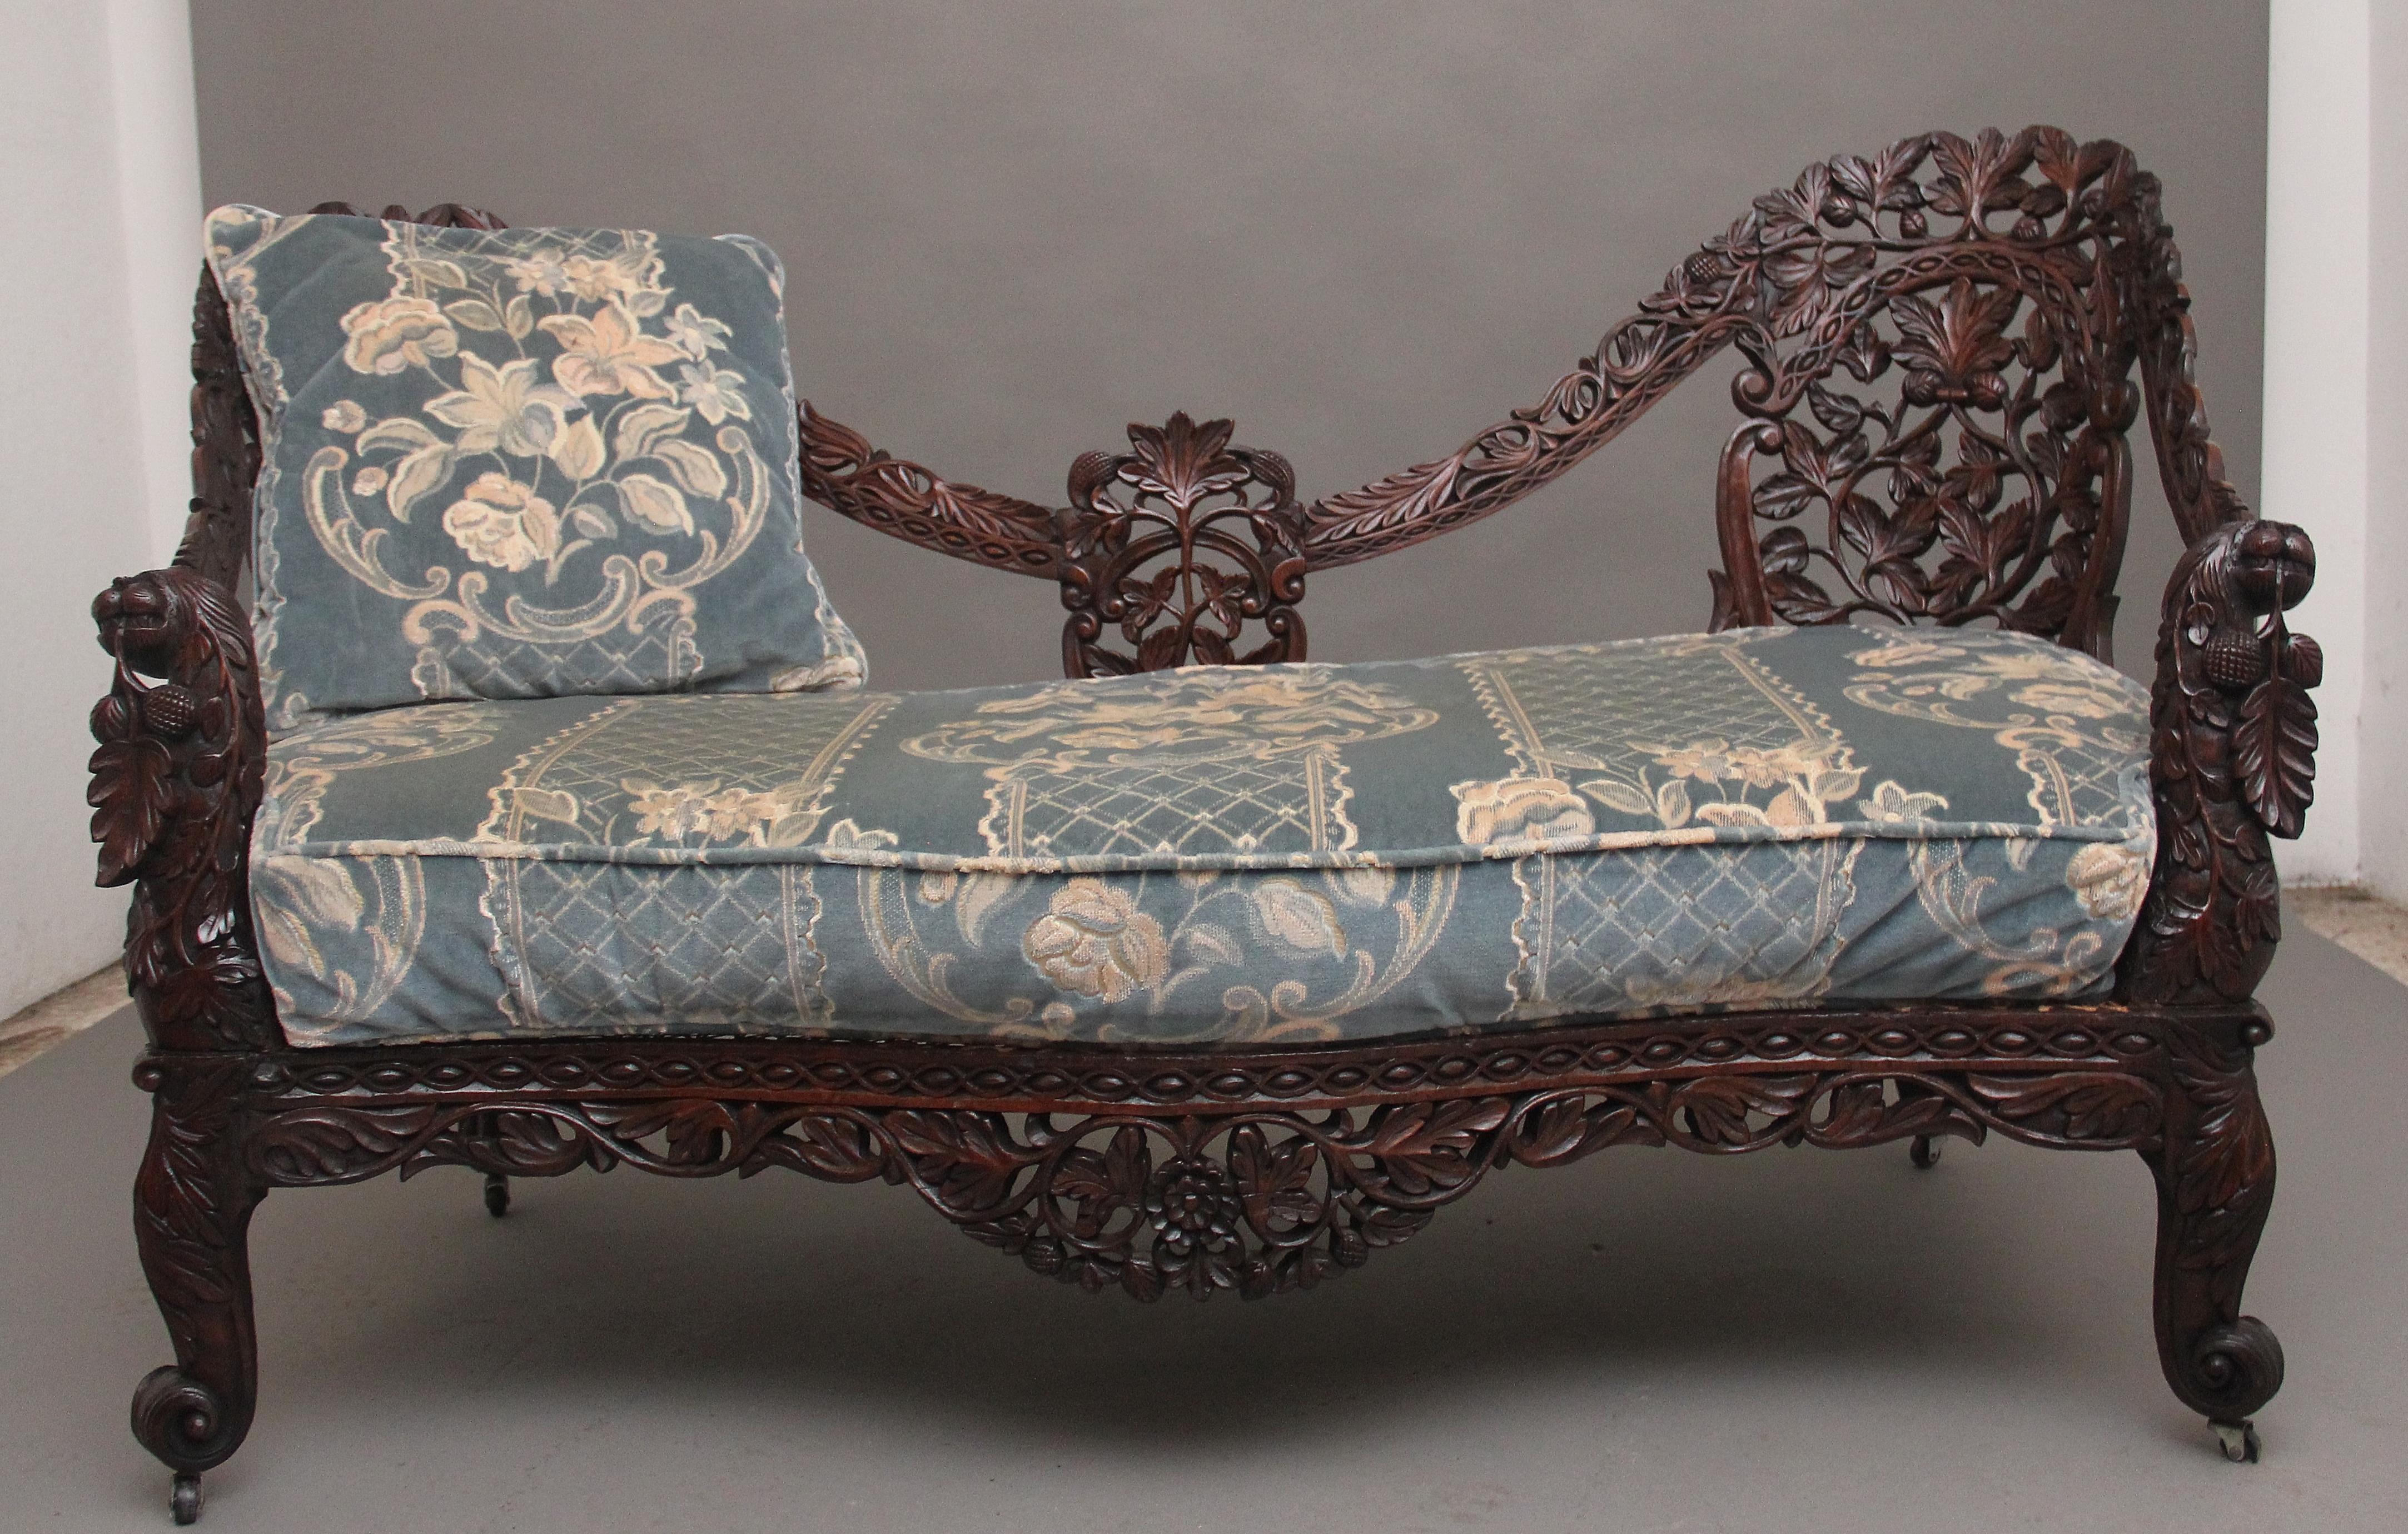 Eine hervorragende Qualität 19. Jahrhundert Anglo-indischen geschnitzten Sofa, das geformte zurück reichlich mit verschiedenen Laub geschnitzt, der Rahmen, der bis zu den stark geschnitzten und dekorativen vorderen unterstützt Einbeziehung